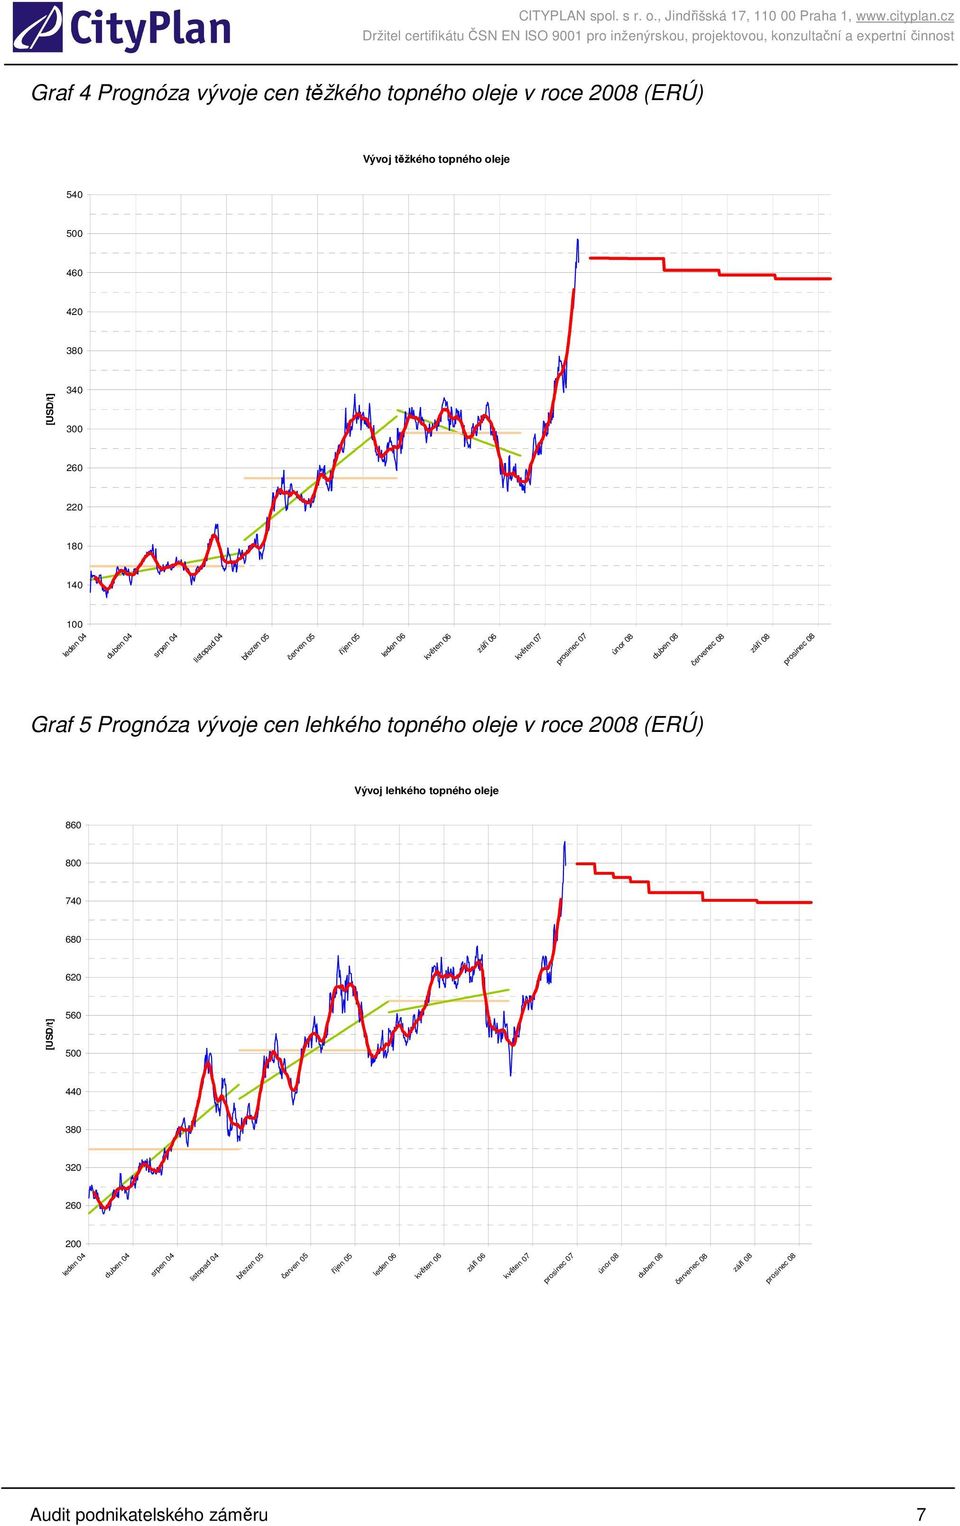 Prognóza vývoje cen lehkého topného oleje v roce 2008 (ERÚ) Vývoj lehkého topného oleje 860 800 740 680 620 [USD/t] 560 500 440 380 320 260 200 leden 04 duben 04